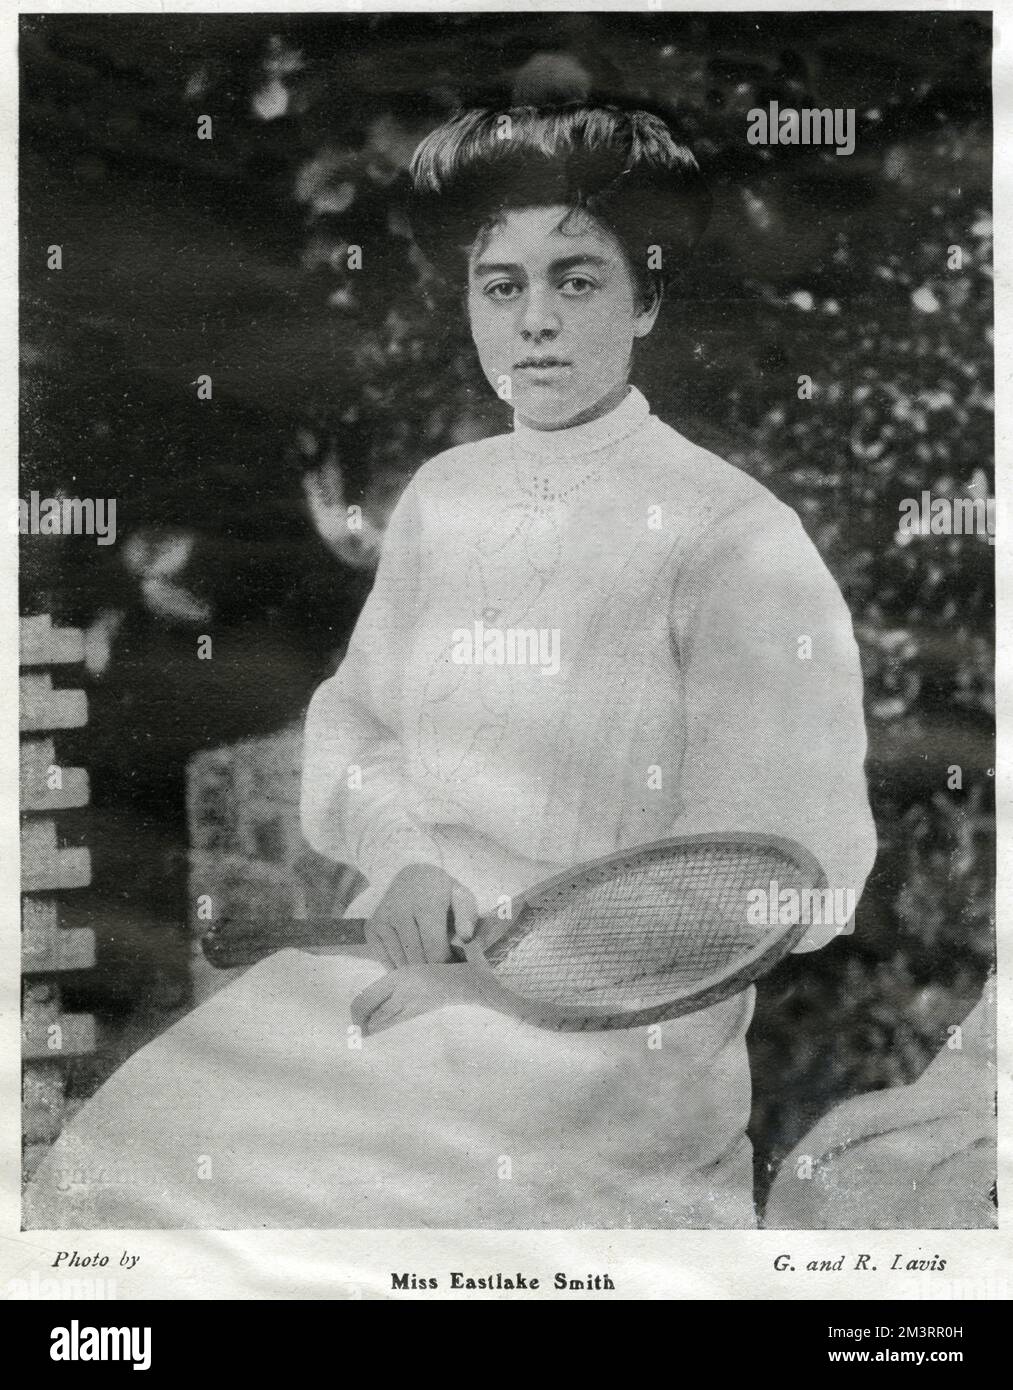 Gwendoline Eastlake-Smith (1883 - 1941), joueur de tennis britannique, a remporté une médaille d'or olympique aux Jeux olympiques d'été de Londres en 1908. Date: 1905 Banque D'Images